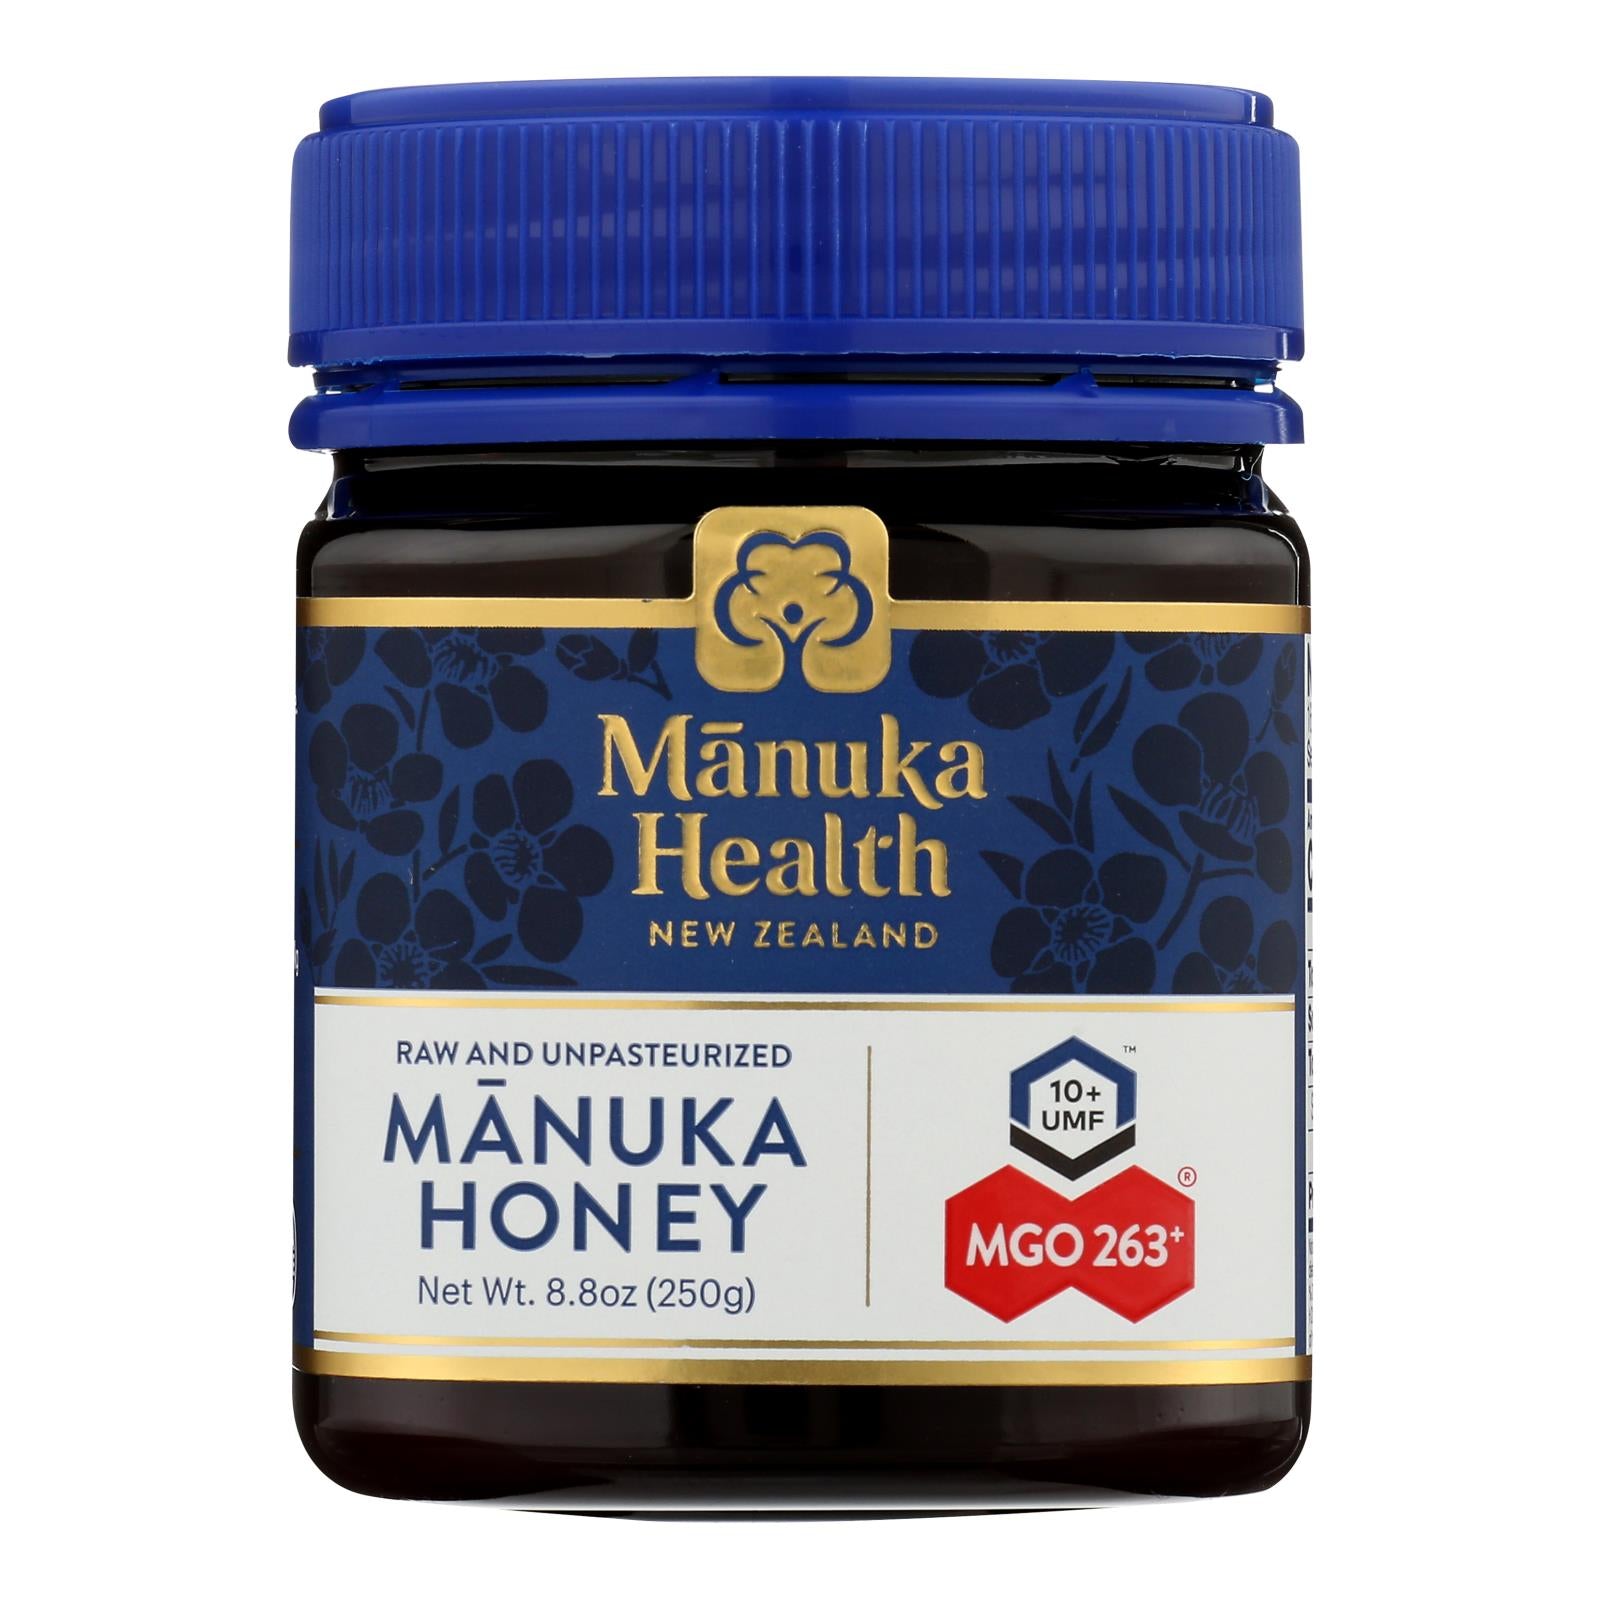 Santé Manuka, Manuka Health New Zealand Mgo 250+ Manuka Honey - 1 pièce - 8.8 OZ